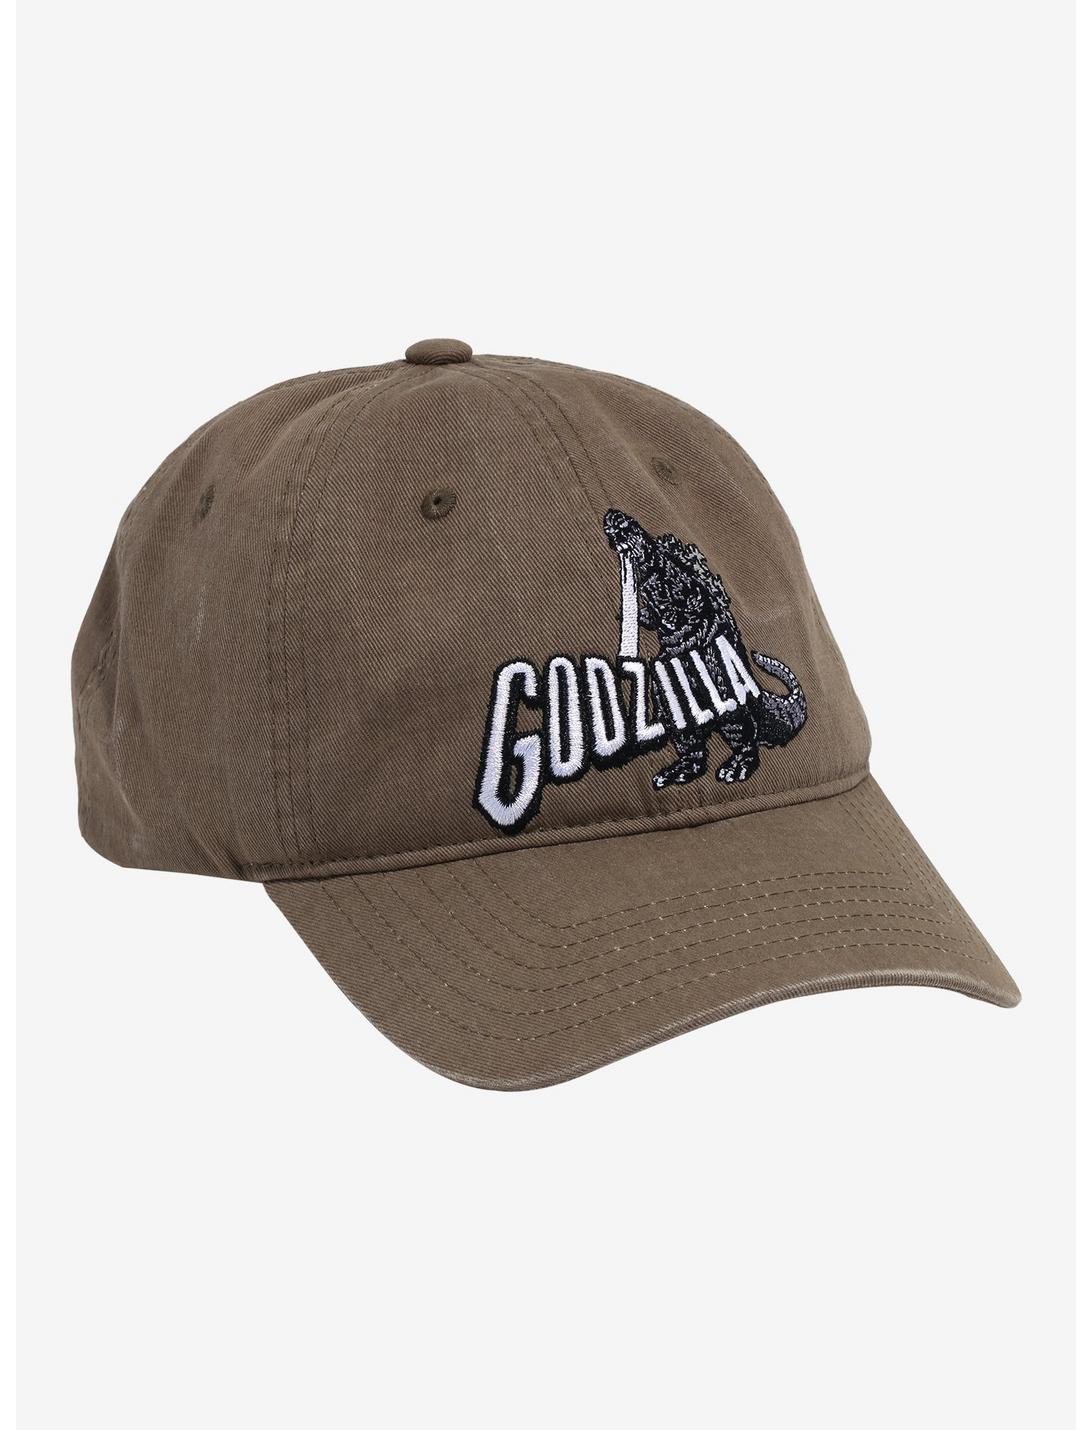 Godzilla Embroidered Wash Dad Cap, , hi-res